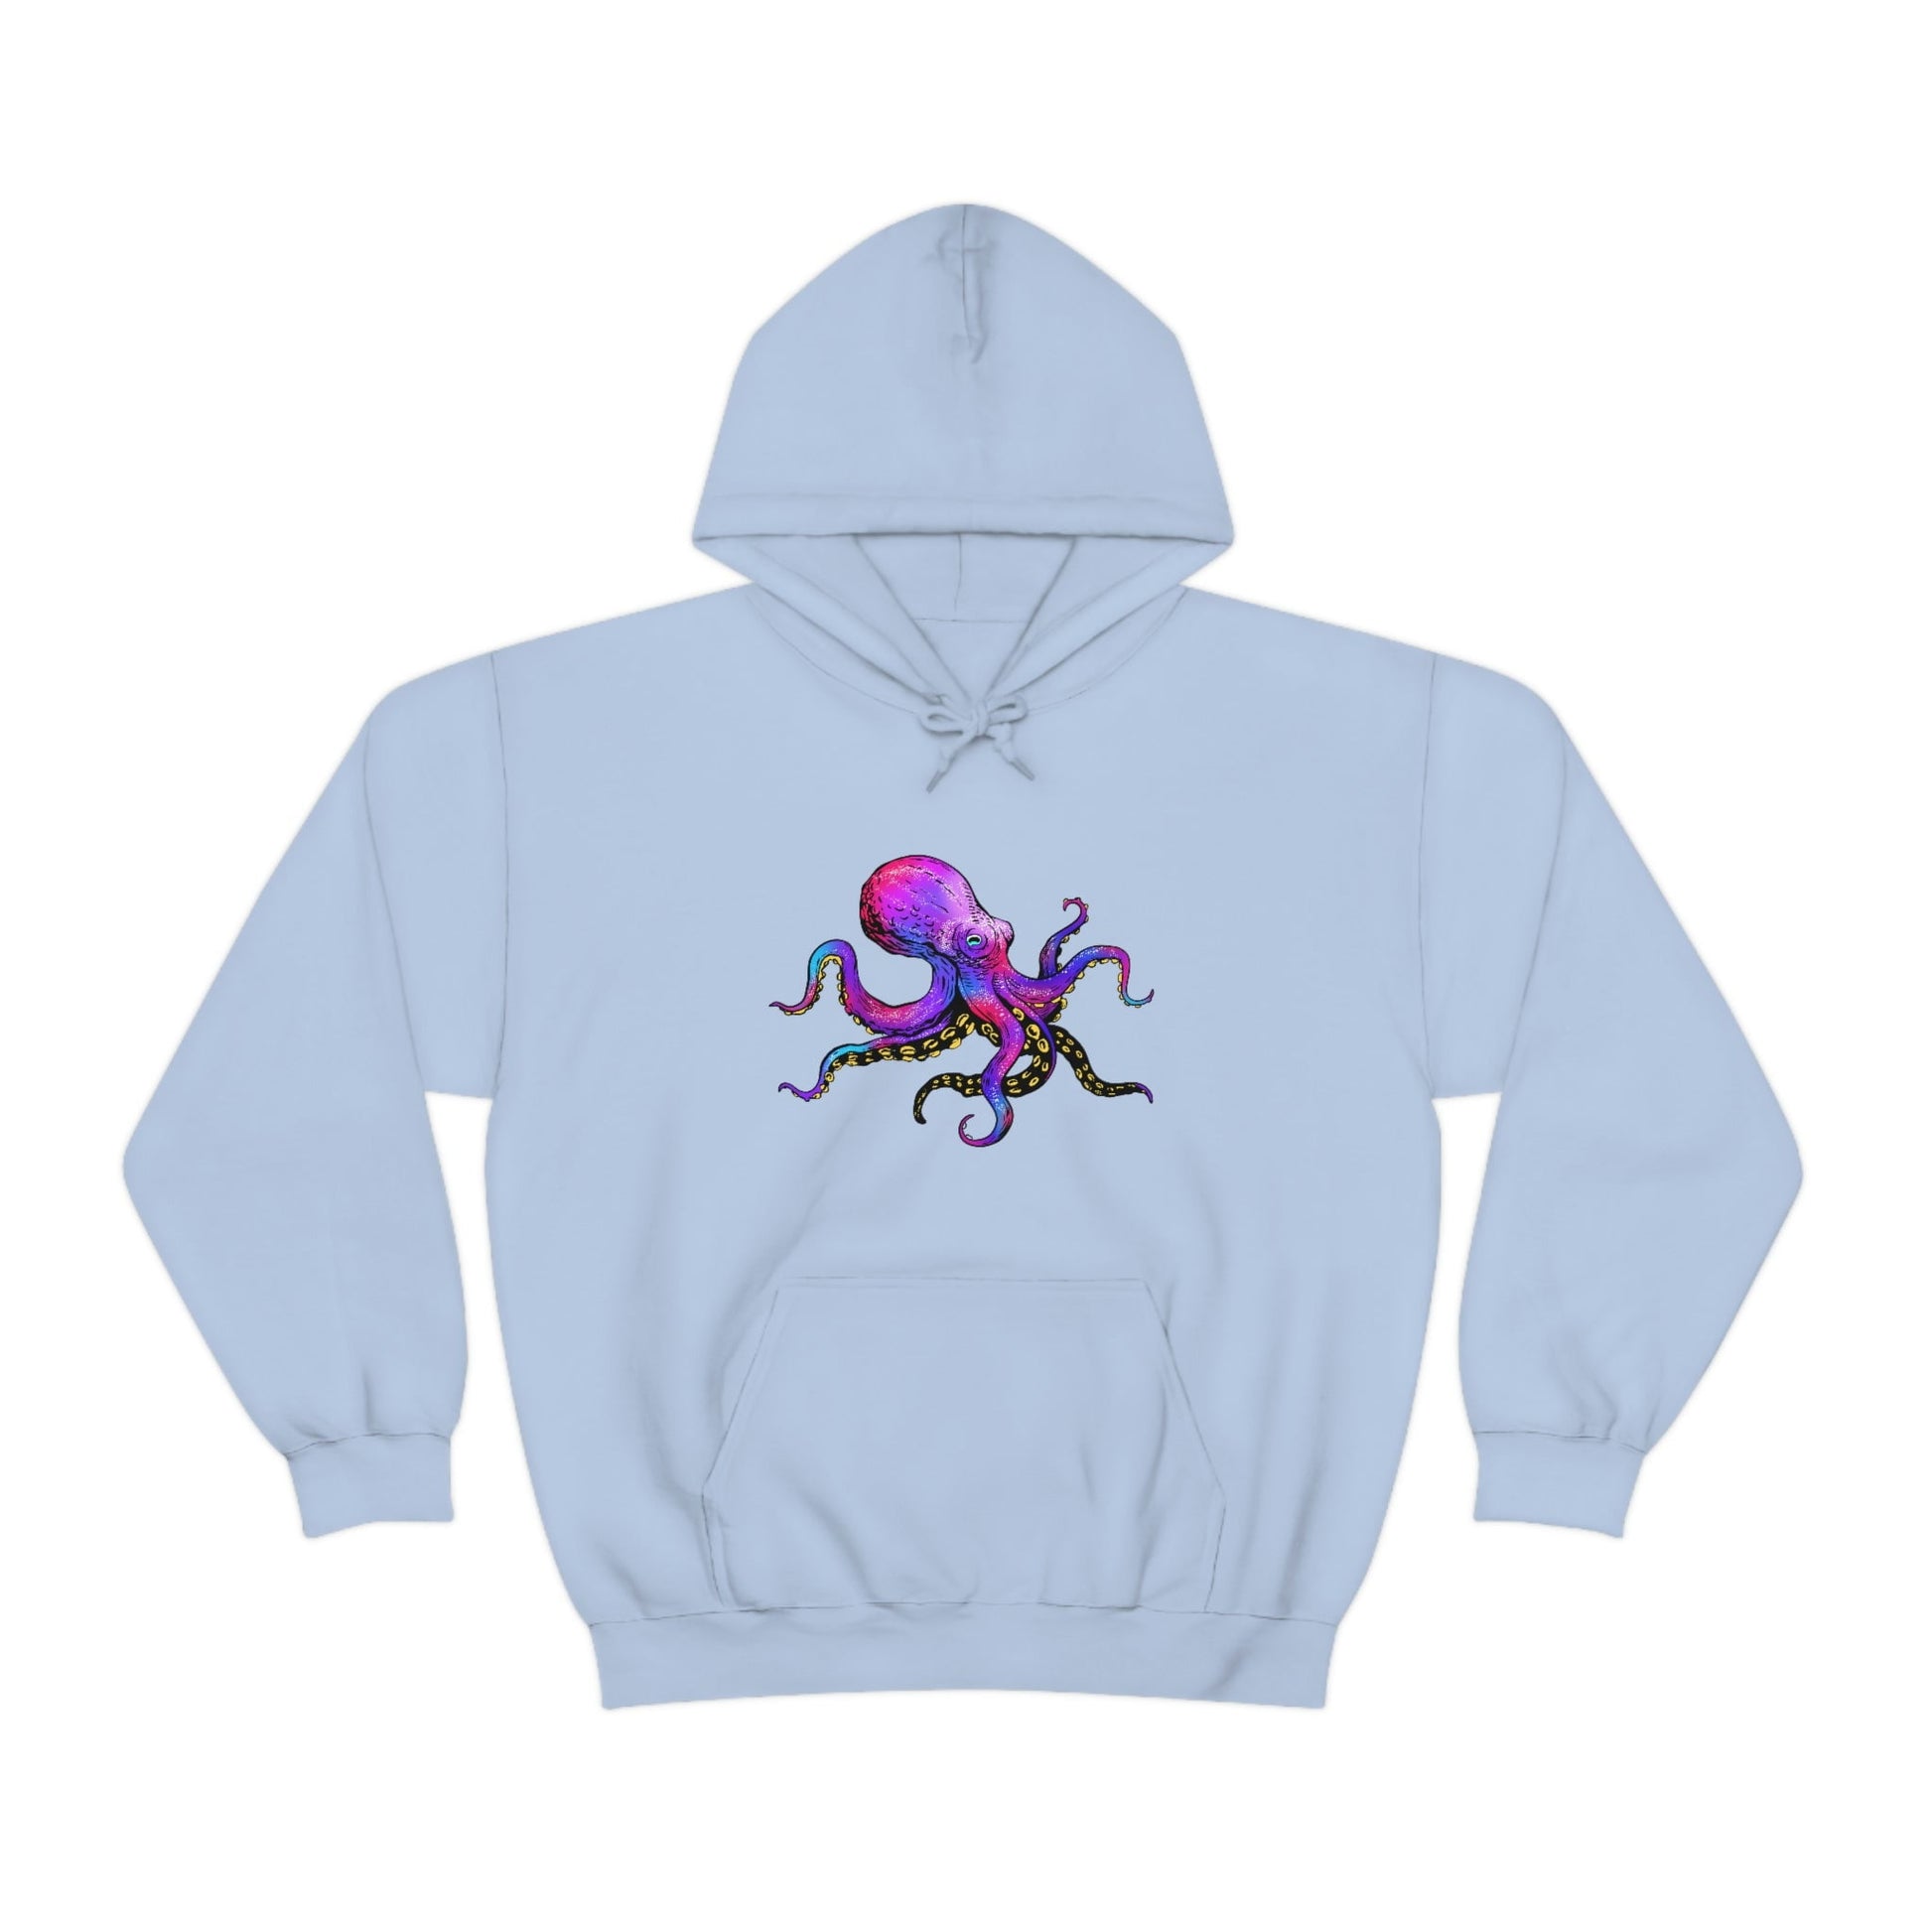 Vibrant Purple Kraken Hoodie - Reef of Clowns